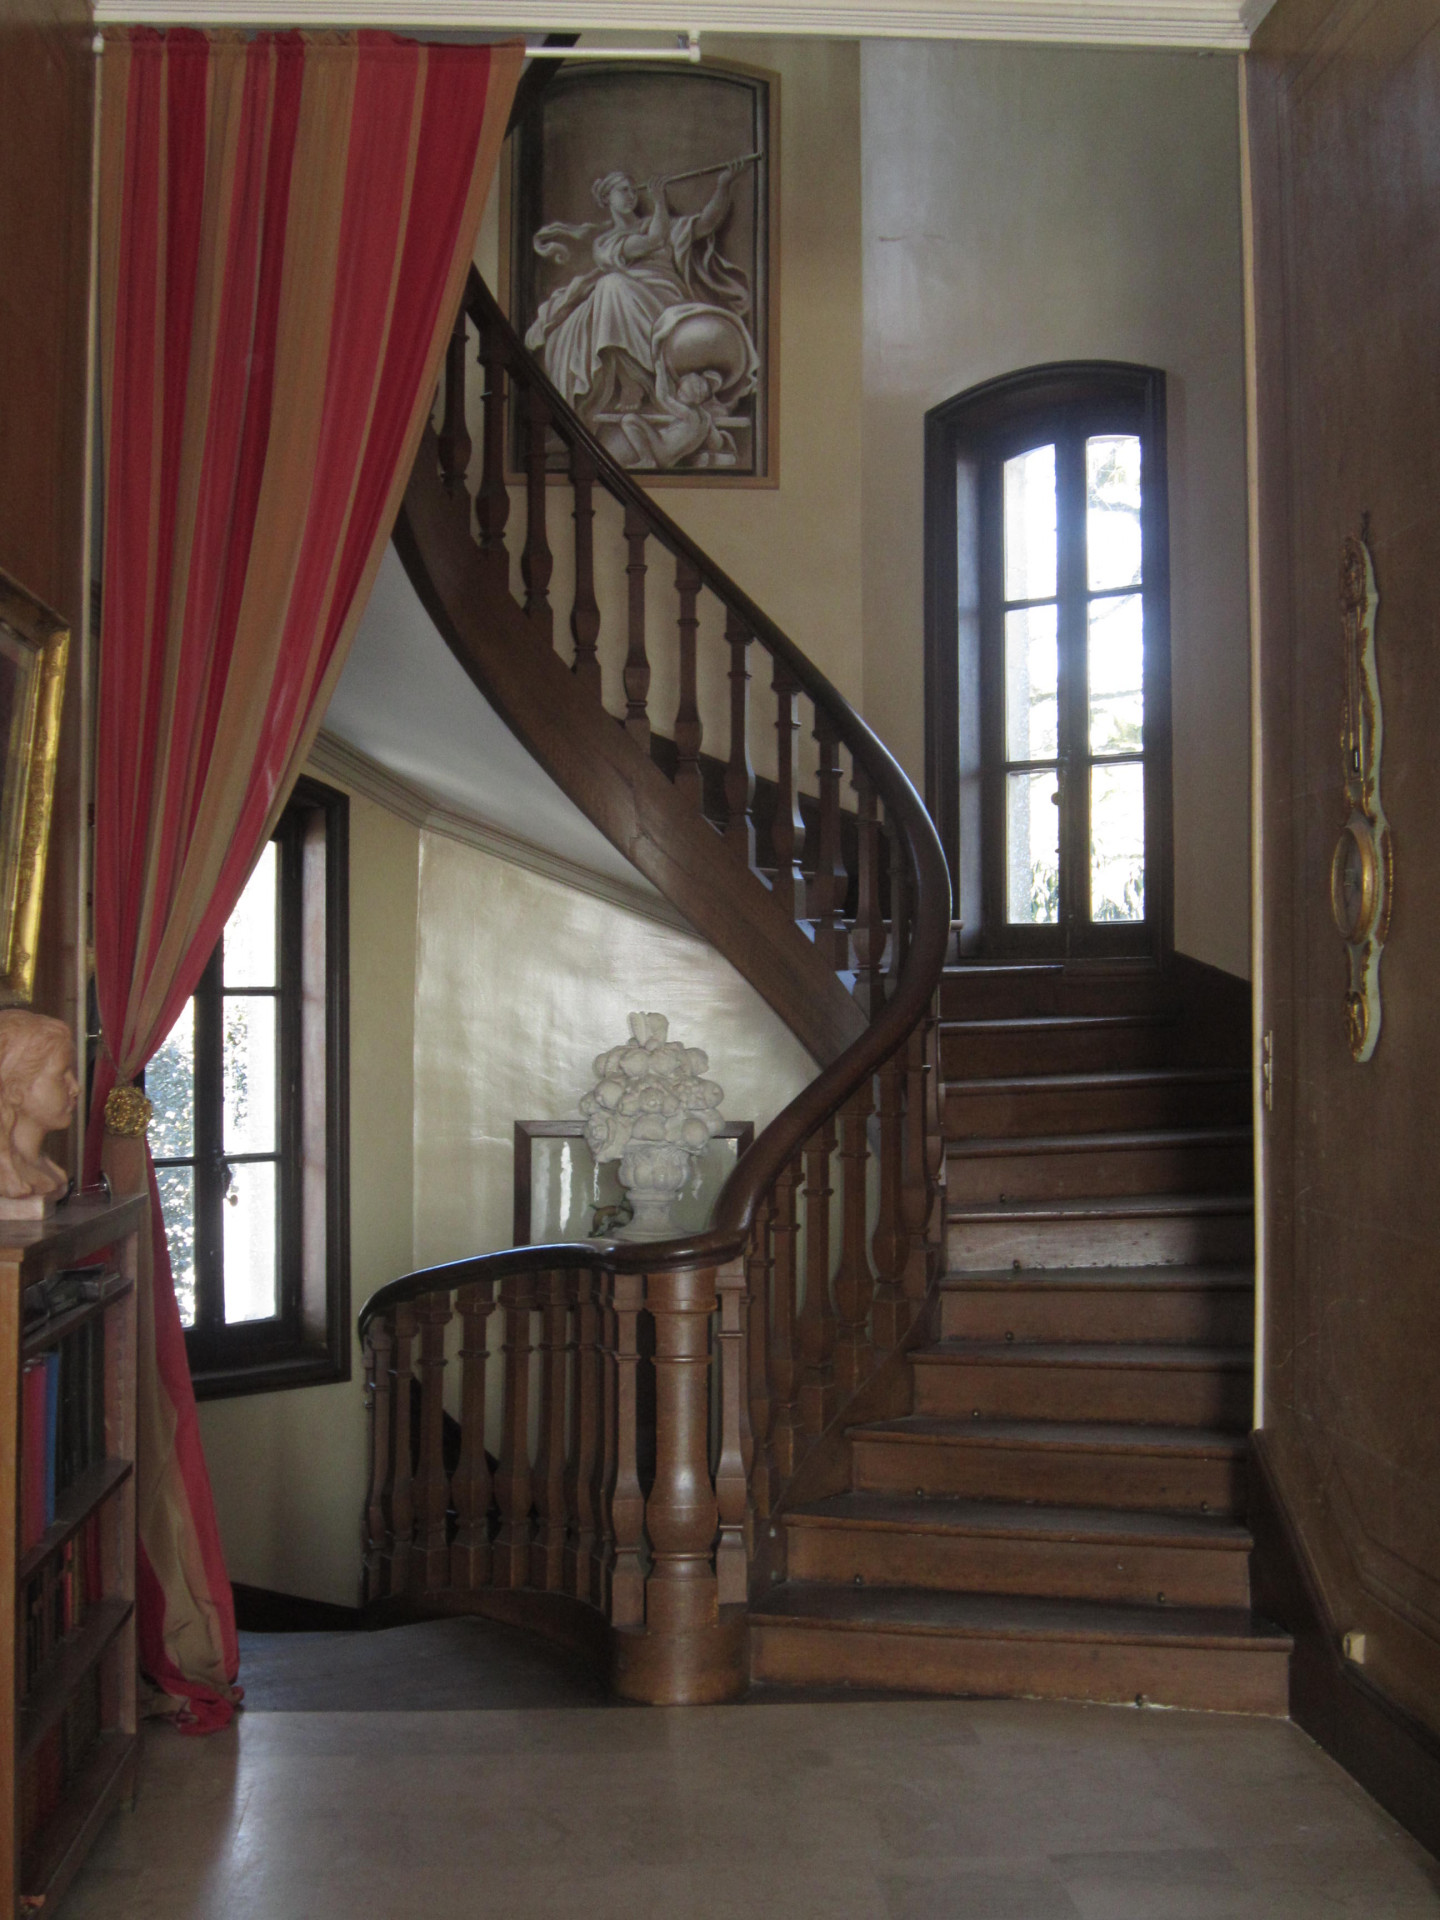 3-photo-chateau-entree-escalier-10291